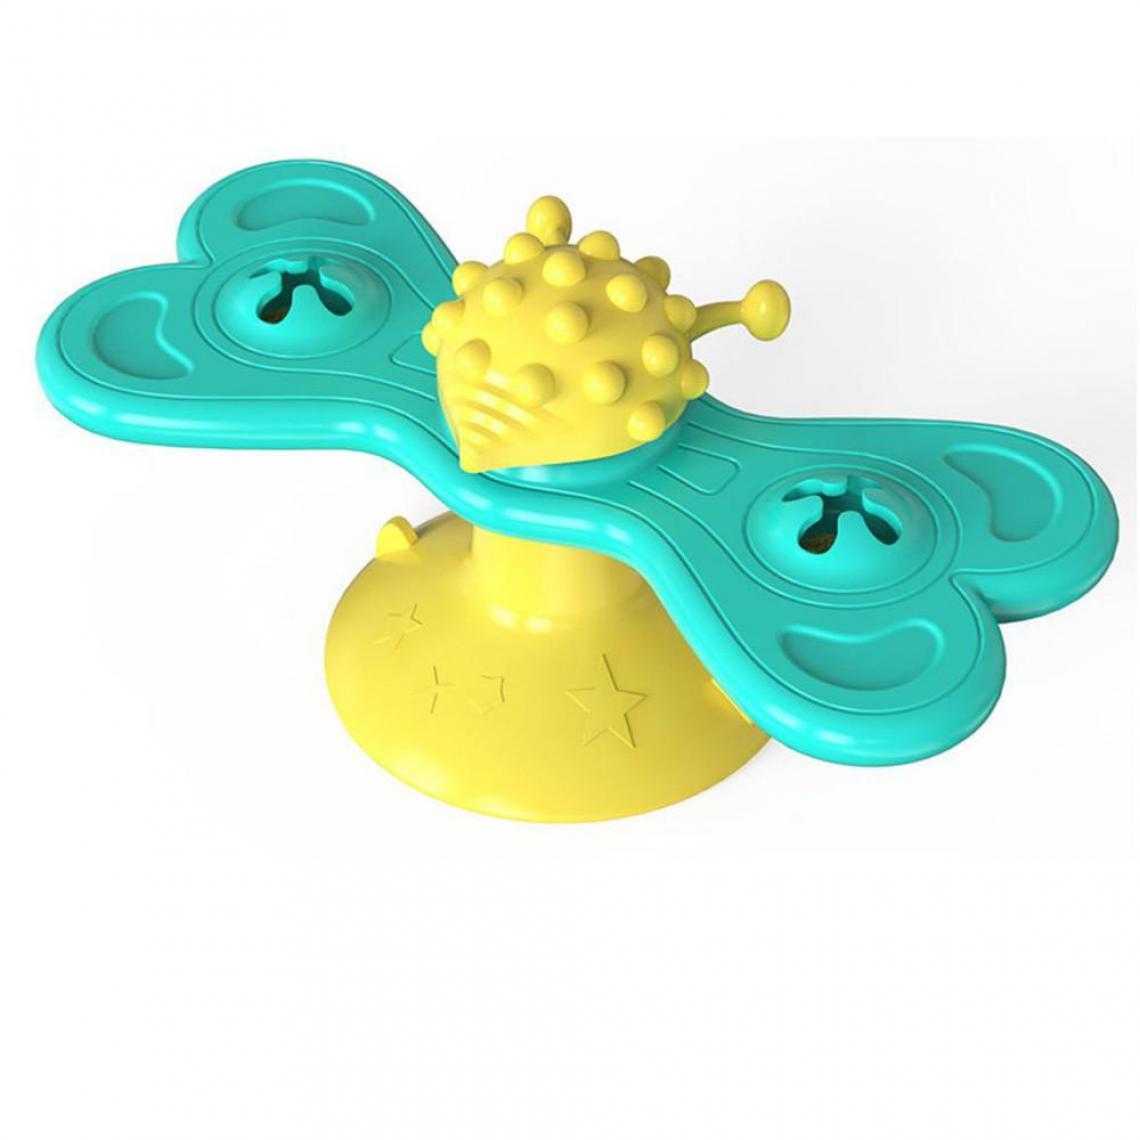 Justgreenbox - Moulin à vent interactif jouet pour chat tourne-disque molaire - T6112211963112 - Jouet pour chien